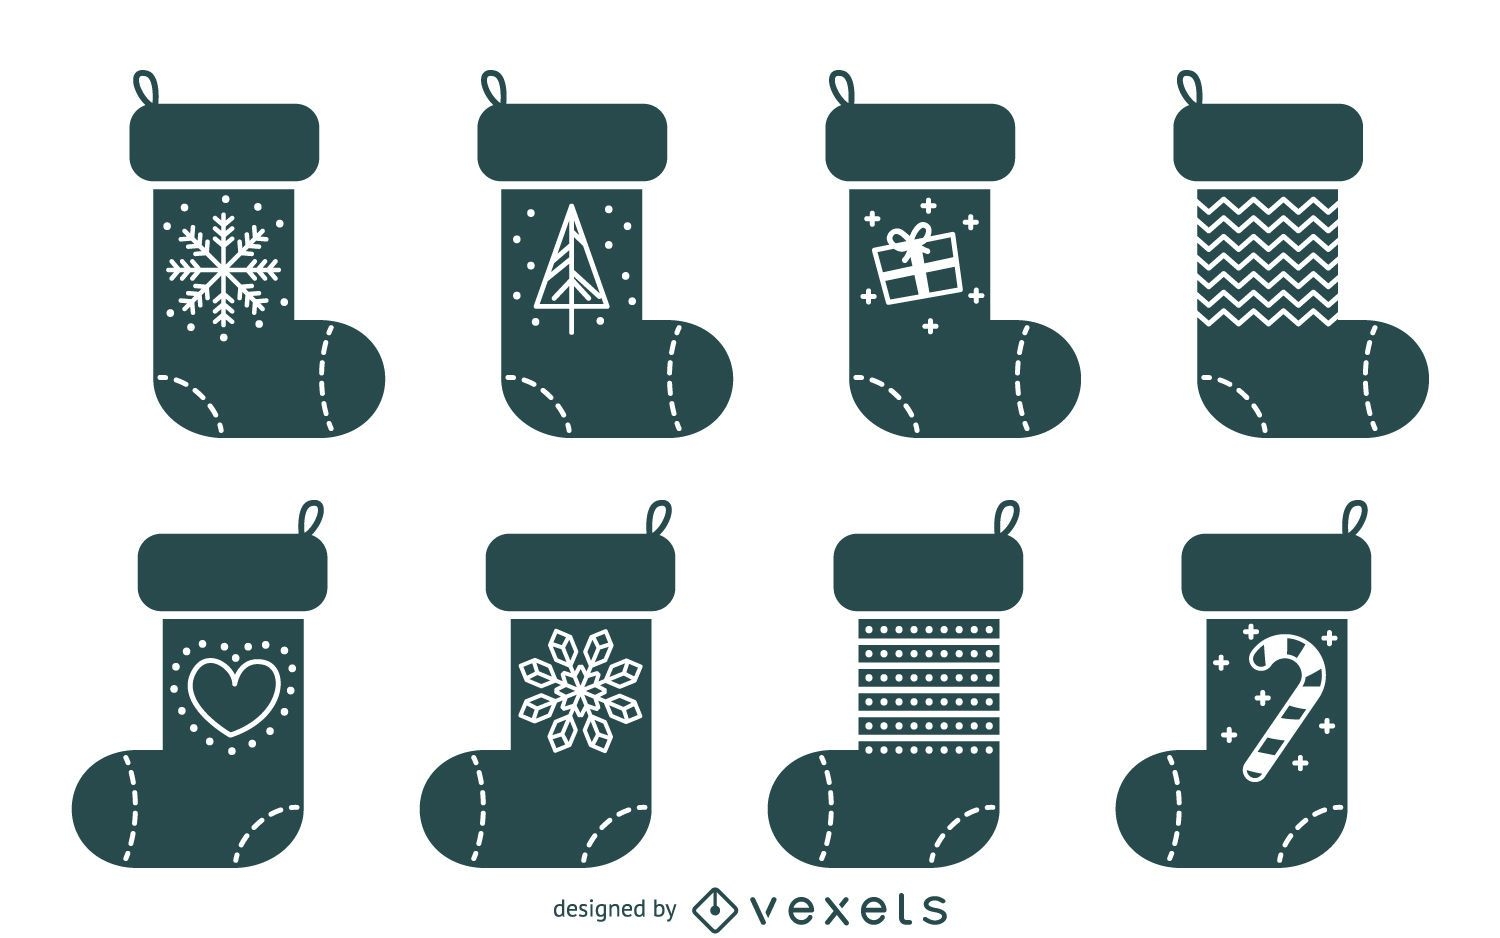 Basic Christmas stocking illustration set